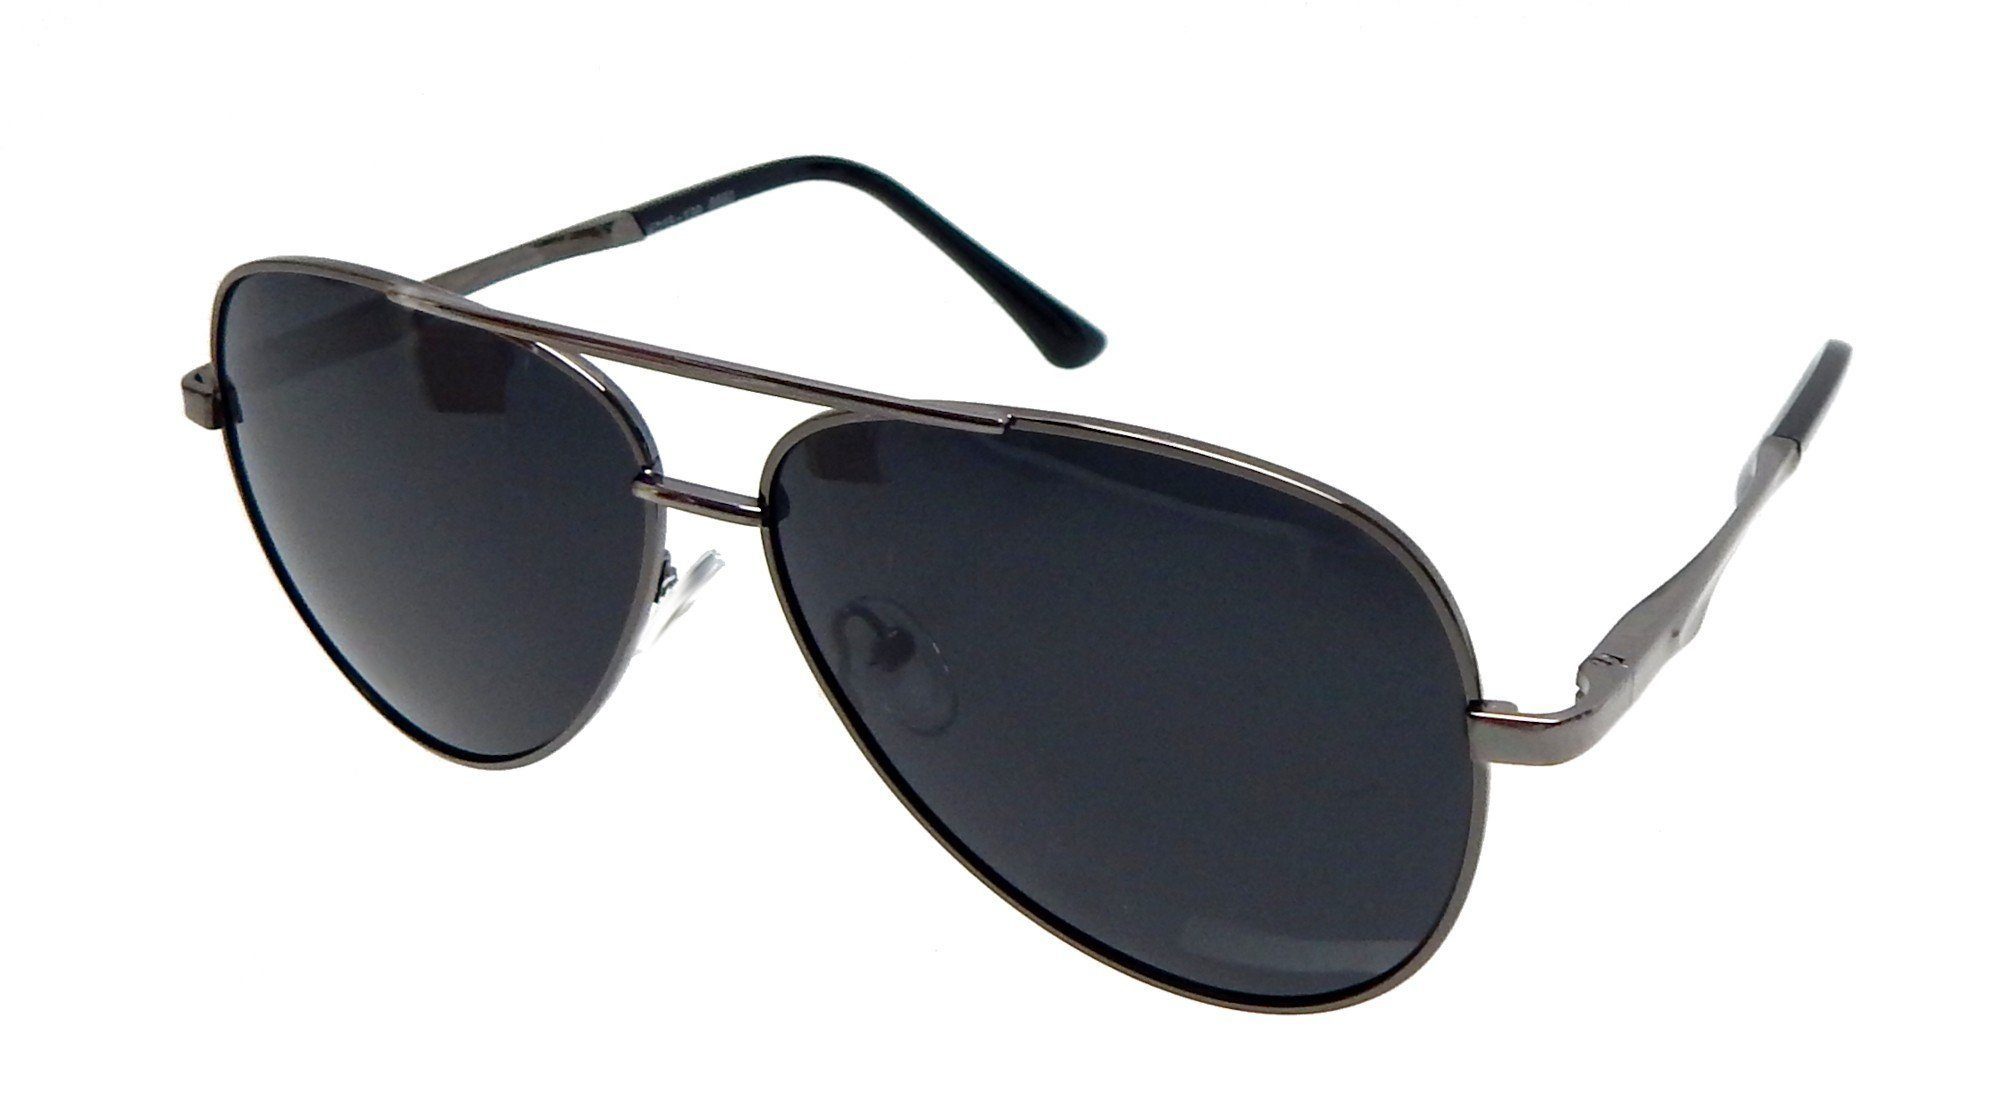 Ella Jonte Pilotenbrille Herren Sonnenbrille schwarz polarisierend UV 400 im Etui